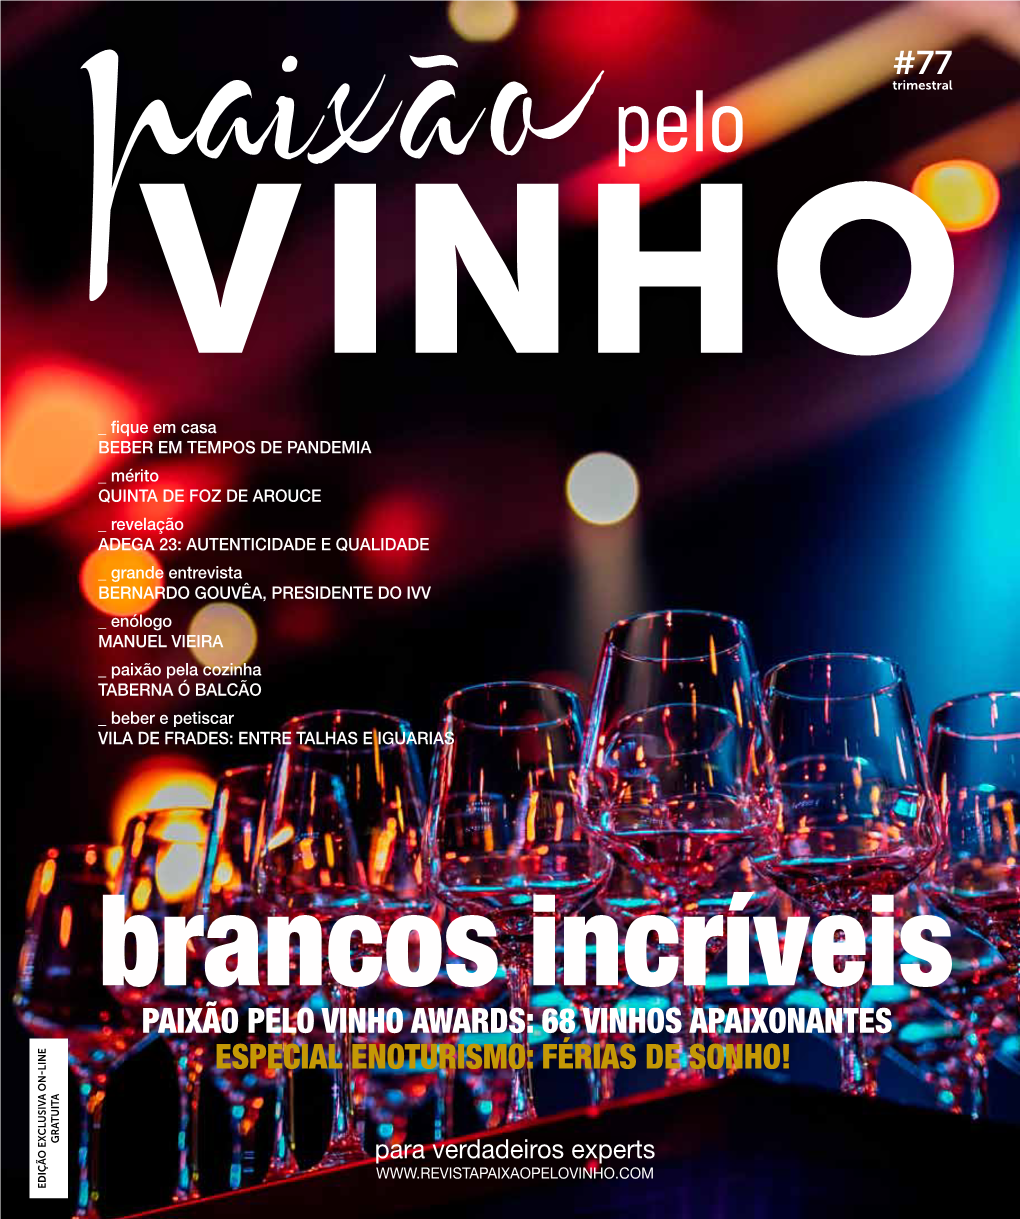 Paixão Pelo Vinho Awards: 68 Vinhos